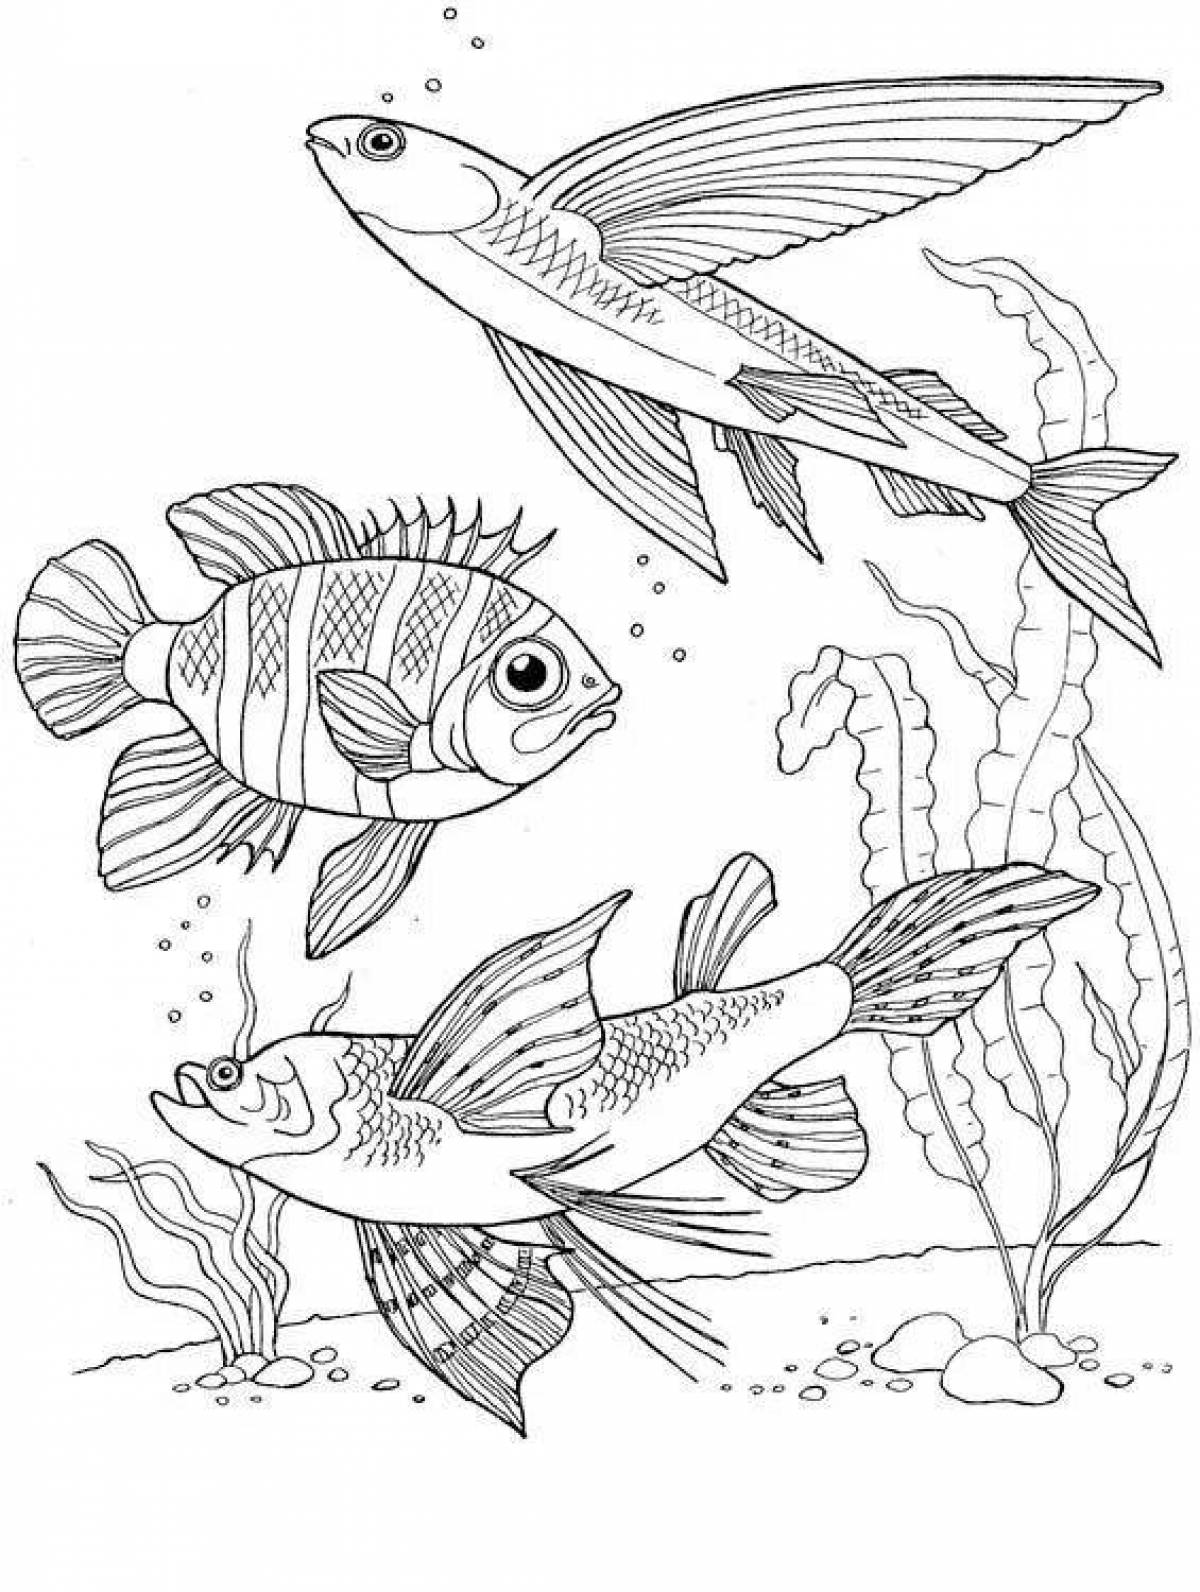 Impressive aquarium fish coloring page